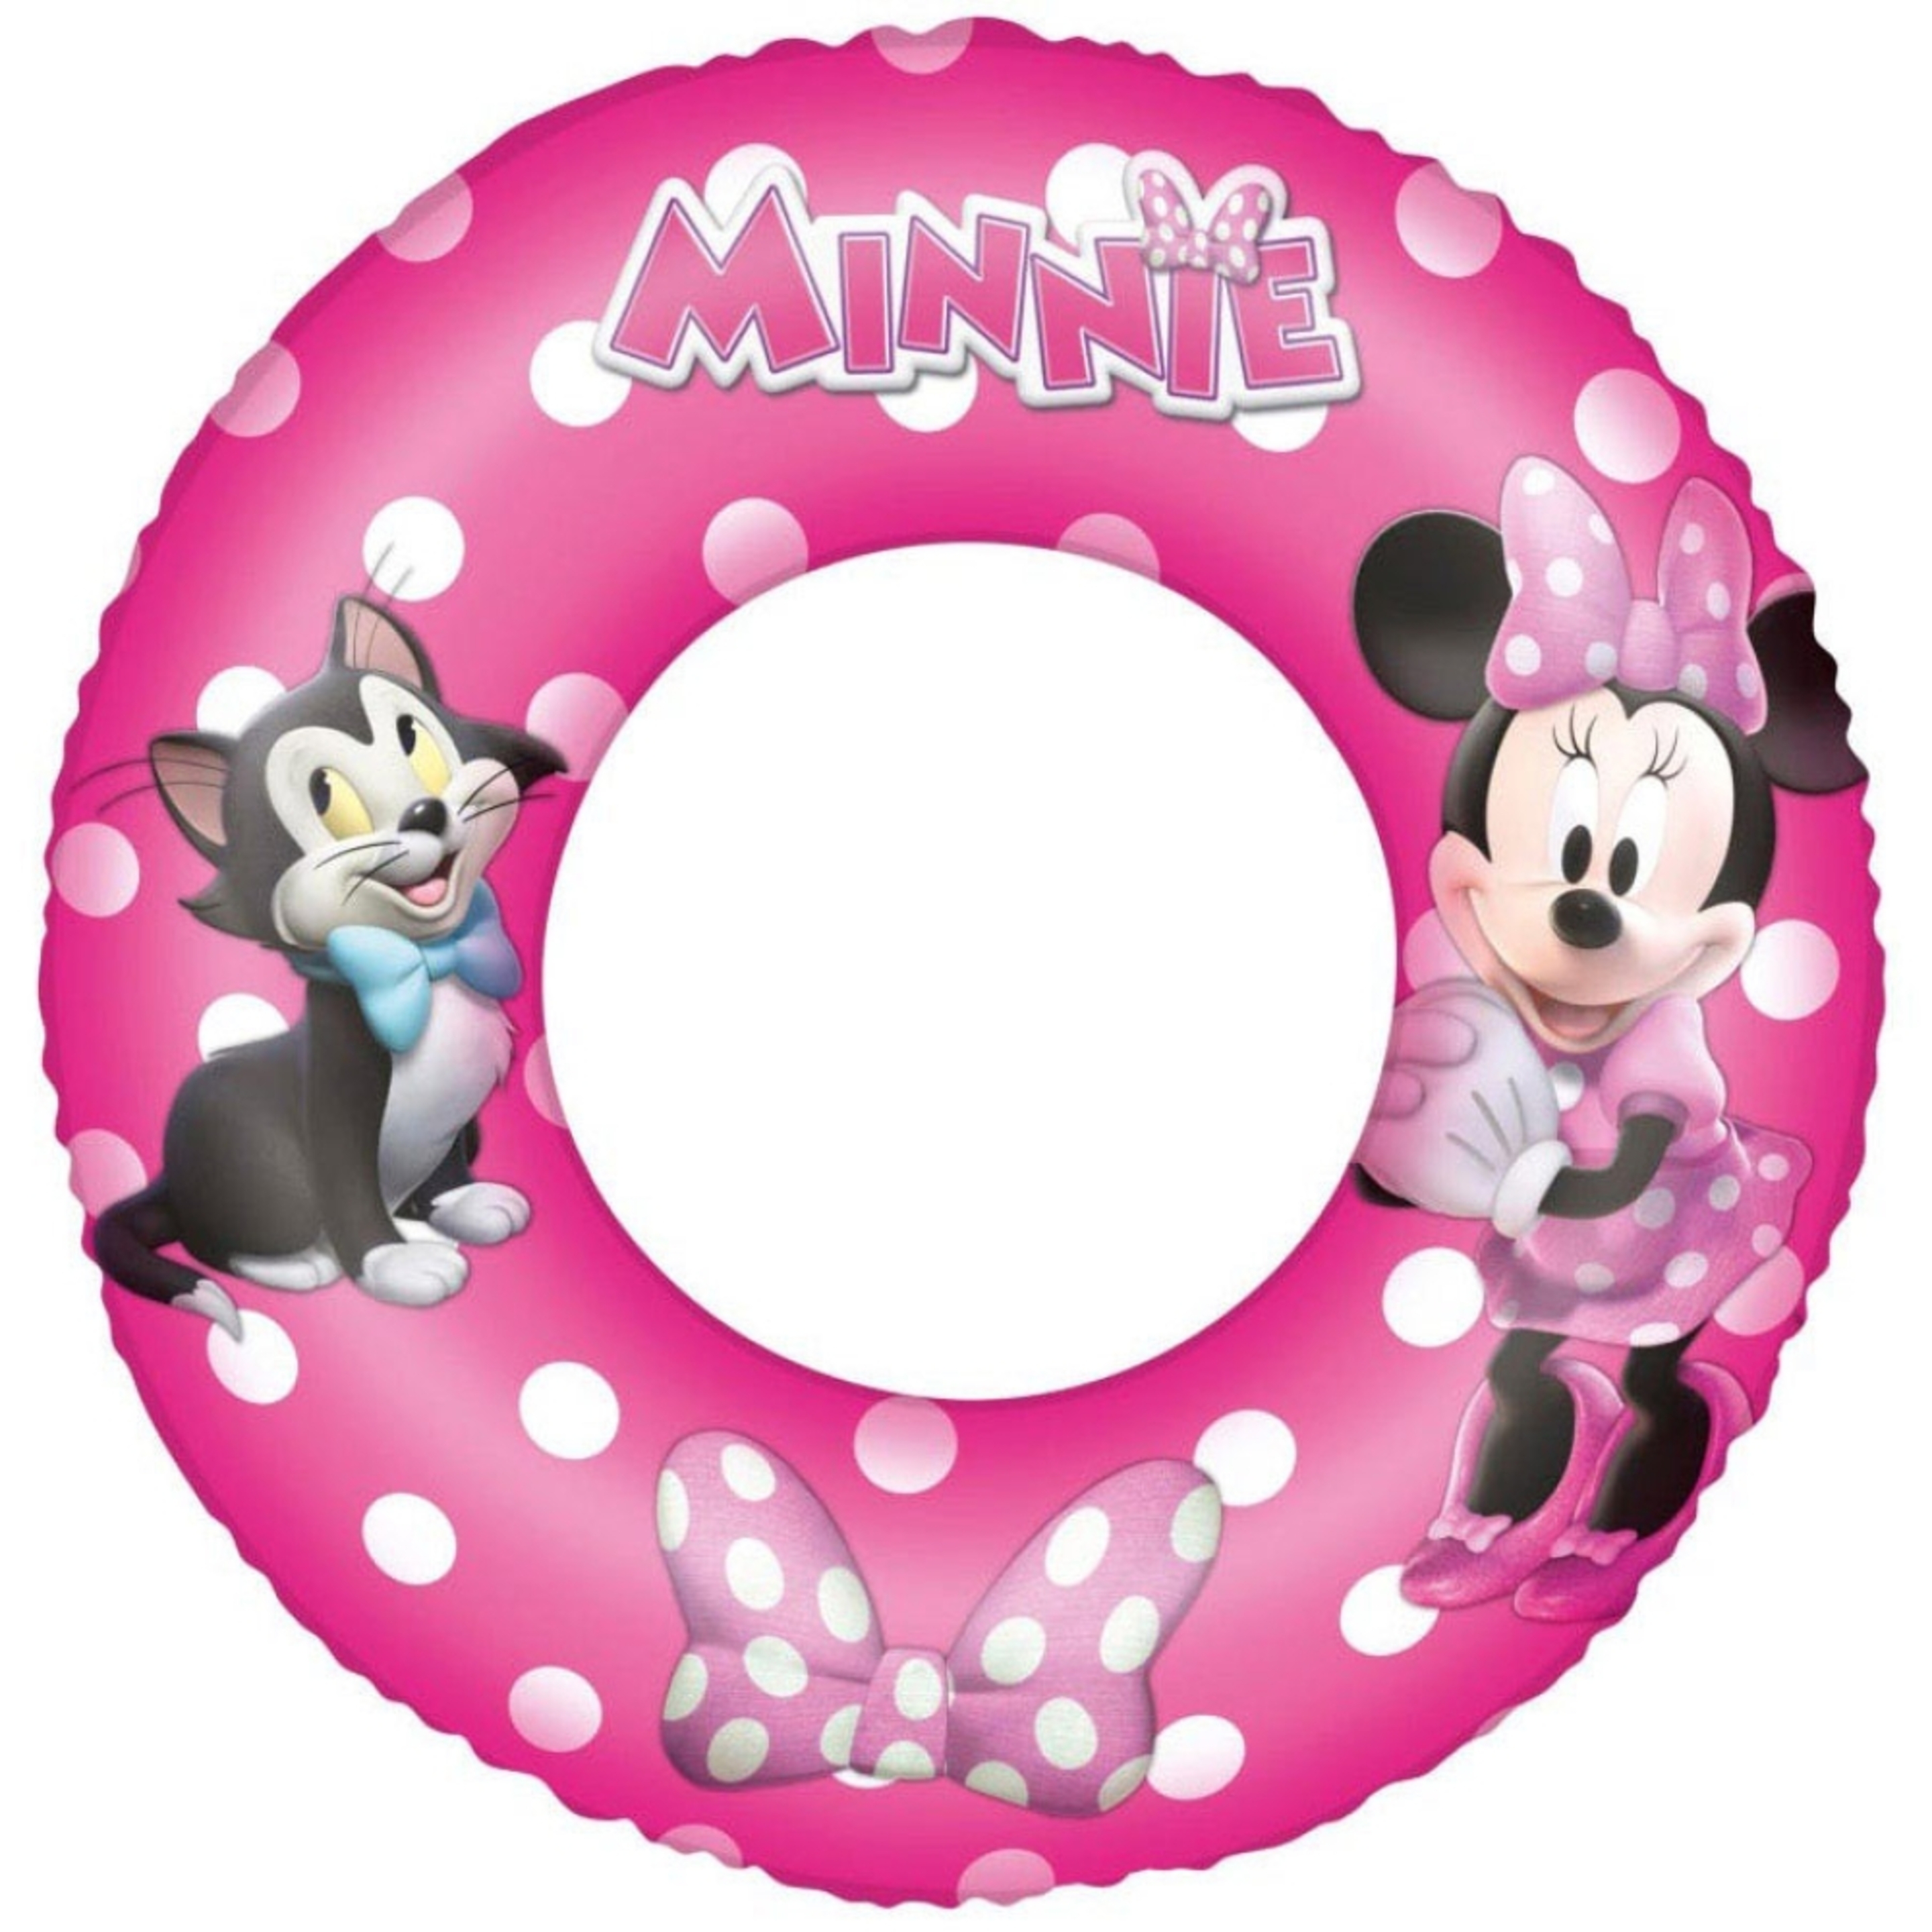 Minnie Flotador Hinchable 56 Cm - rosa - 